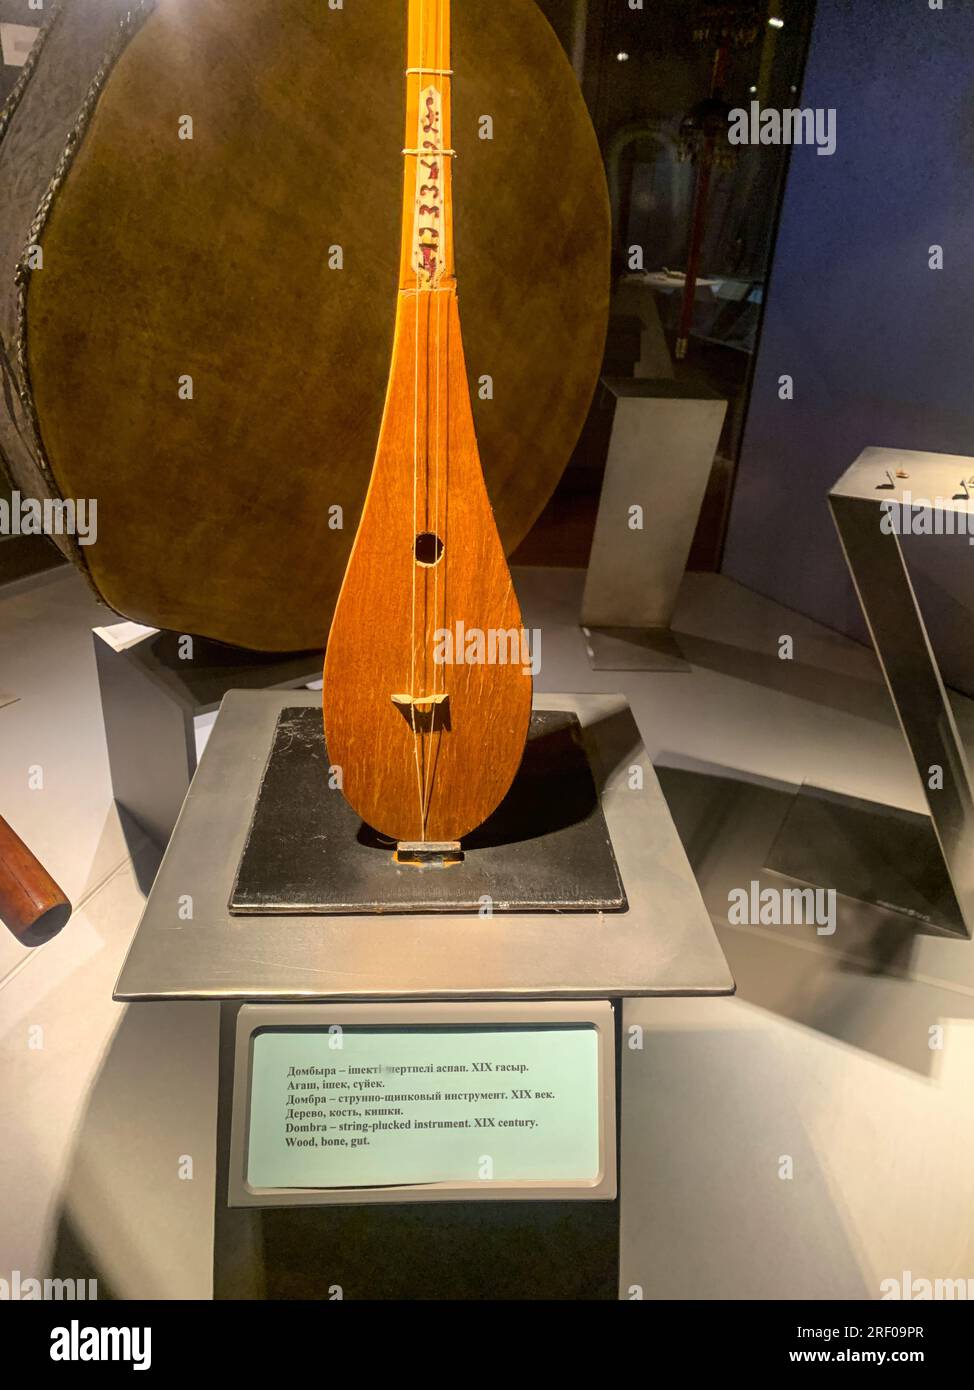 Kasachstan, Almaty. Dombra, ein traditionelles kasachisches Streichinstrument, im Museum für volkstümliche Musikinstrumente. Stockfoto